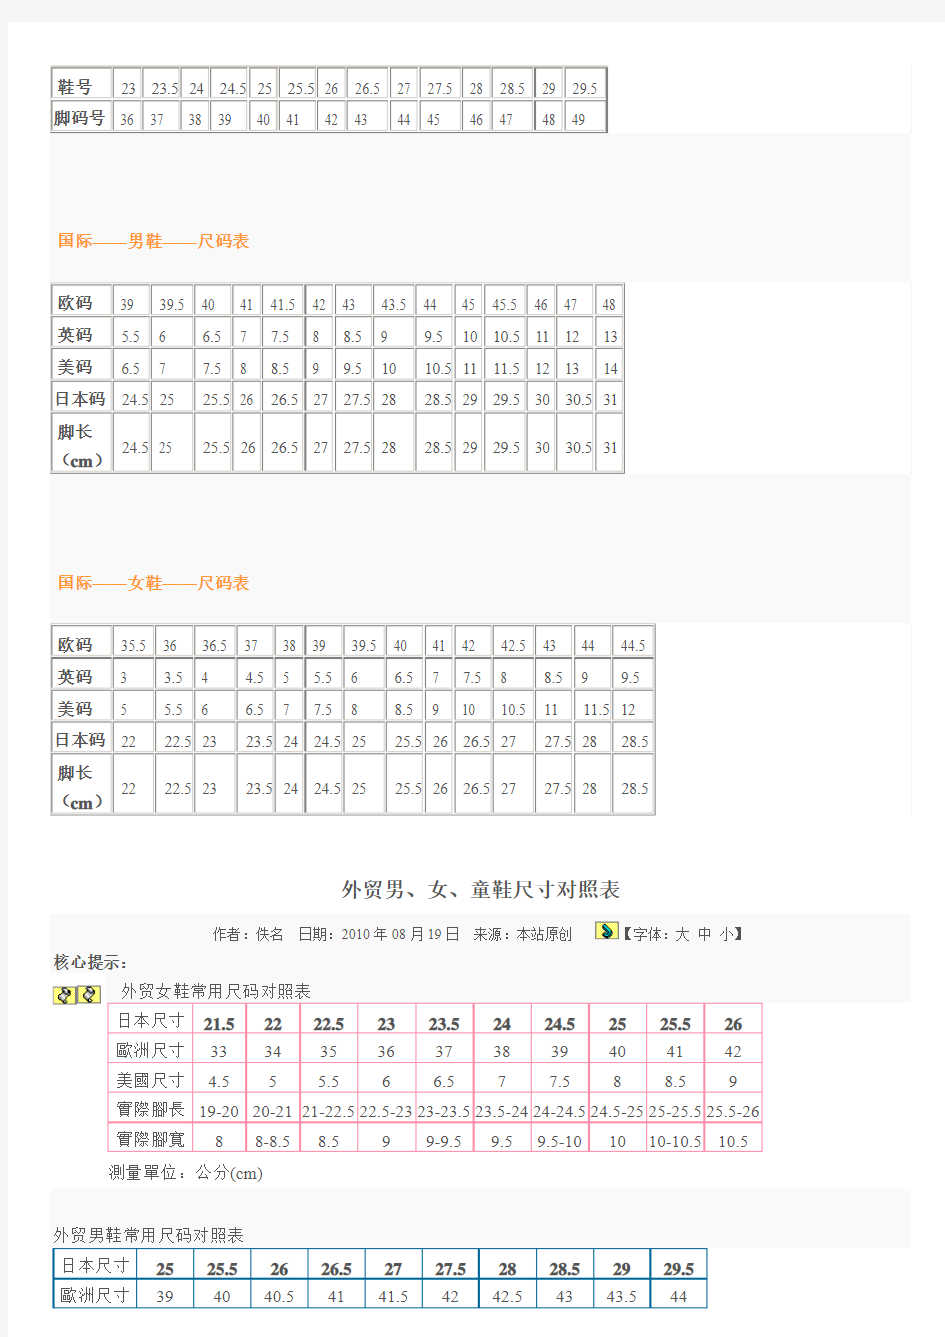 中国成人鞋尺码与国际尺码对照表